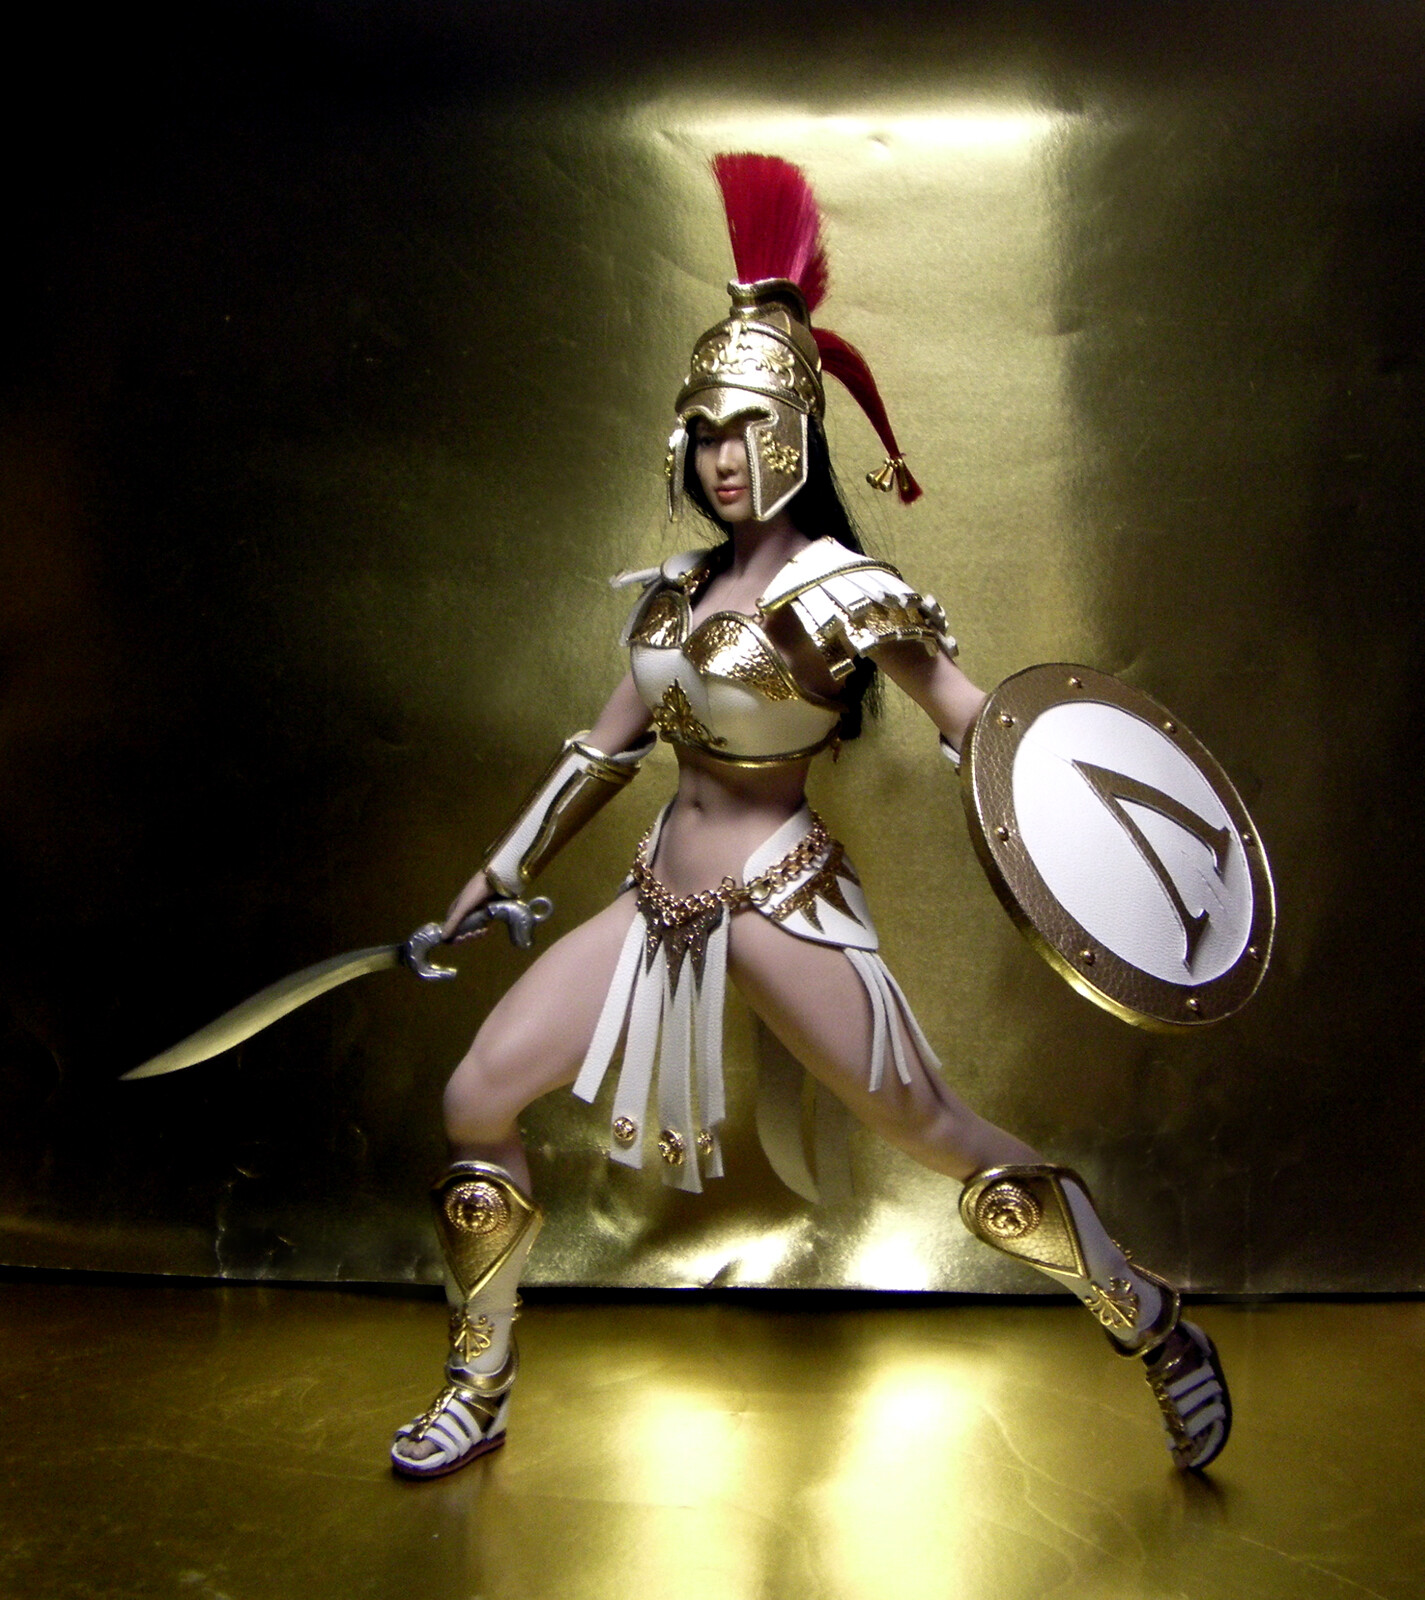 DOLL IN ARMOR - Costume №17 for Phicen doll. Gladiator girl.